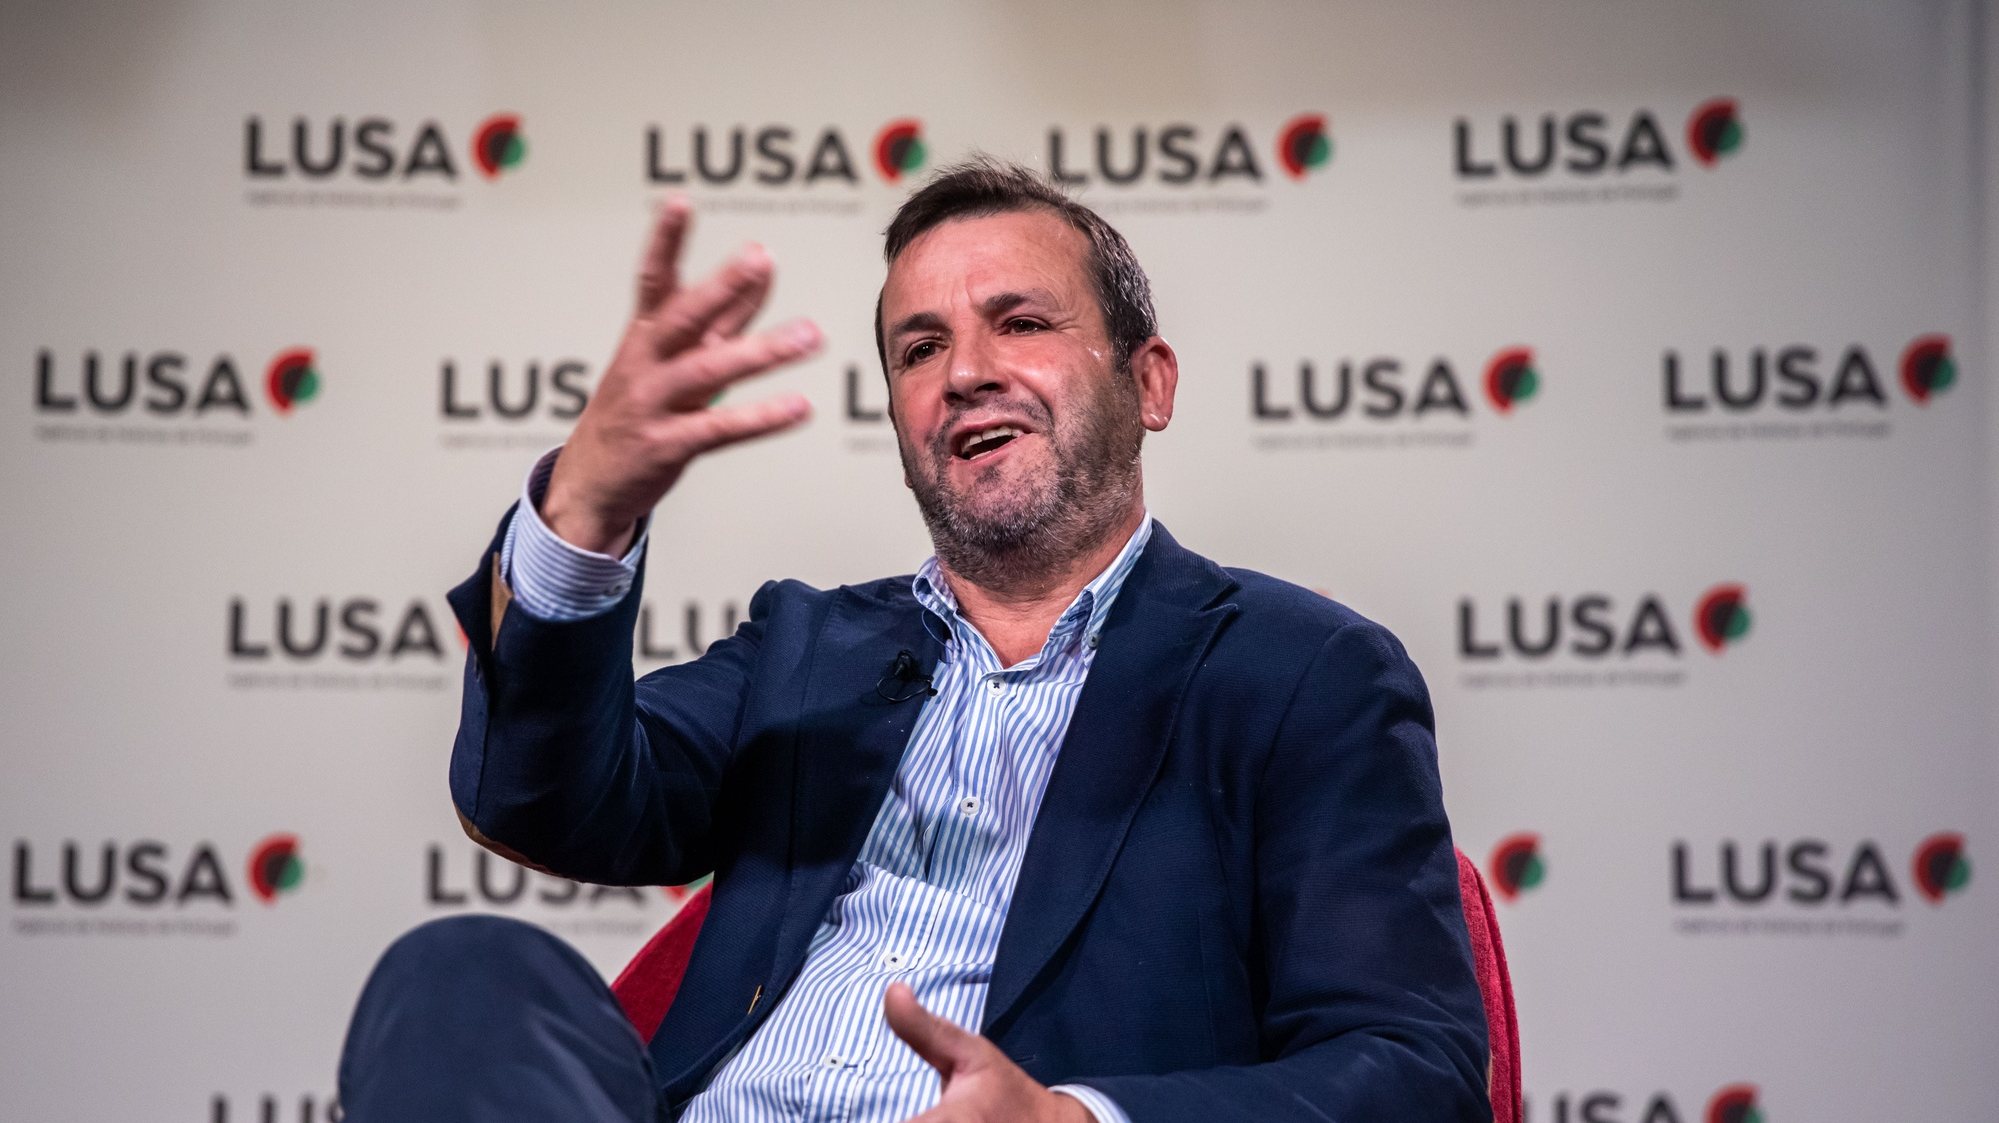 O presidente do Reagir Incluir Reciclar (RIR), Vitorino Silva (Tino de Rans), em entrevista à Lusa, na sede da agência, em Lisboa, 10 de janeiro de 2022. JOSÉ SENA GOULÃO/LUSA